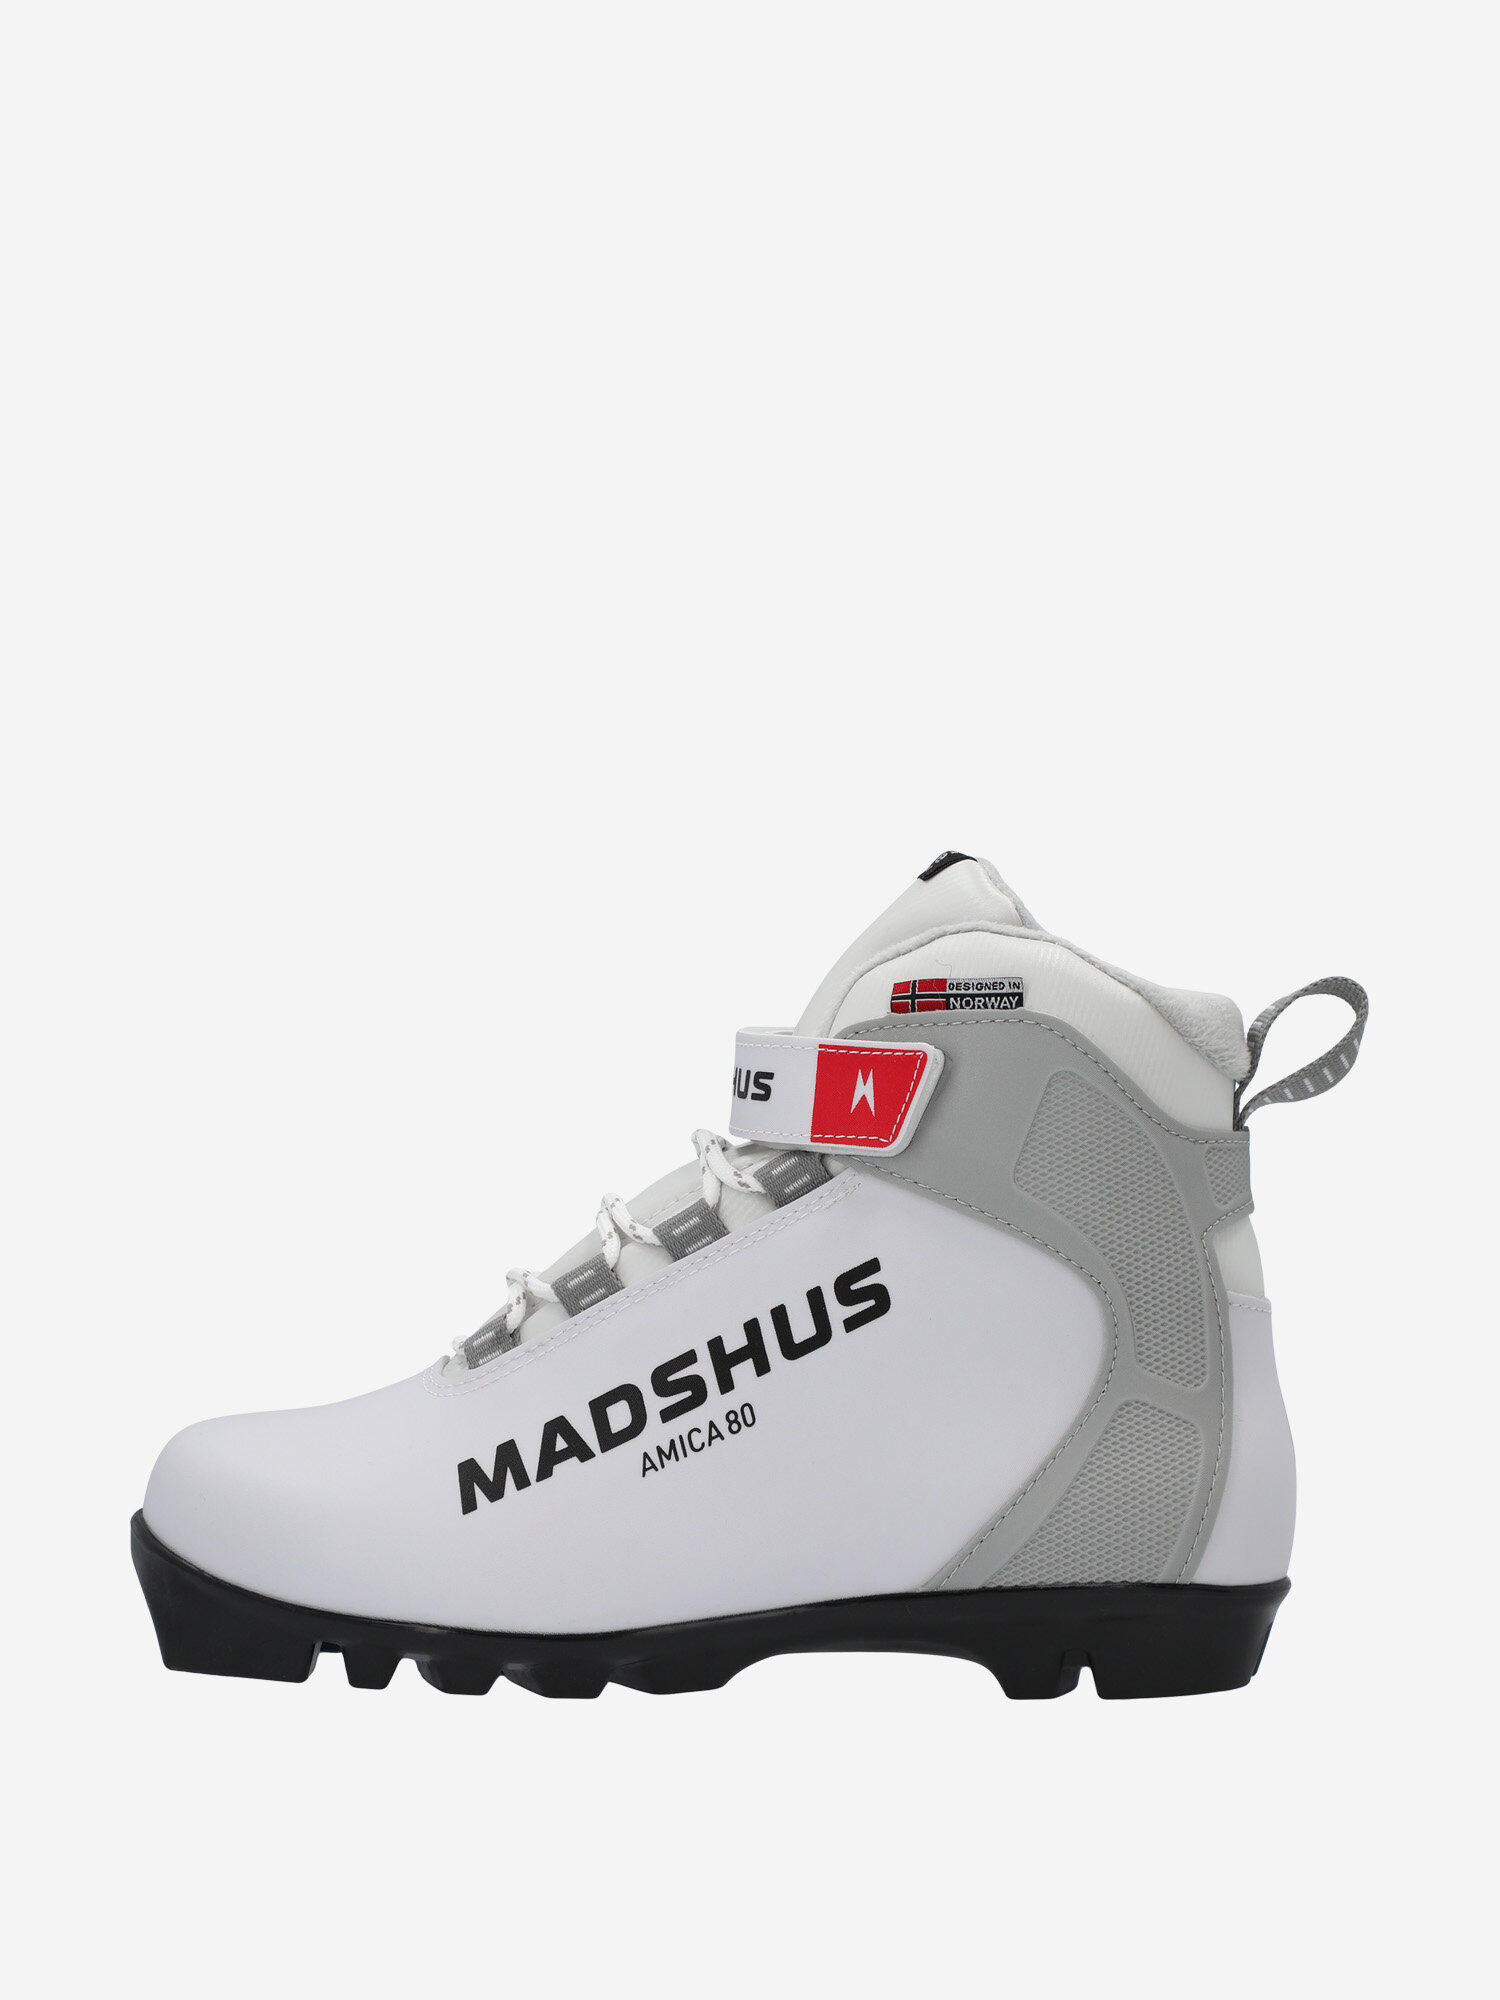 Ботинки для беговых лыж женские Madshus Amica 80 Белый; RUS: 41, Ориг: 42